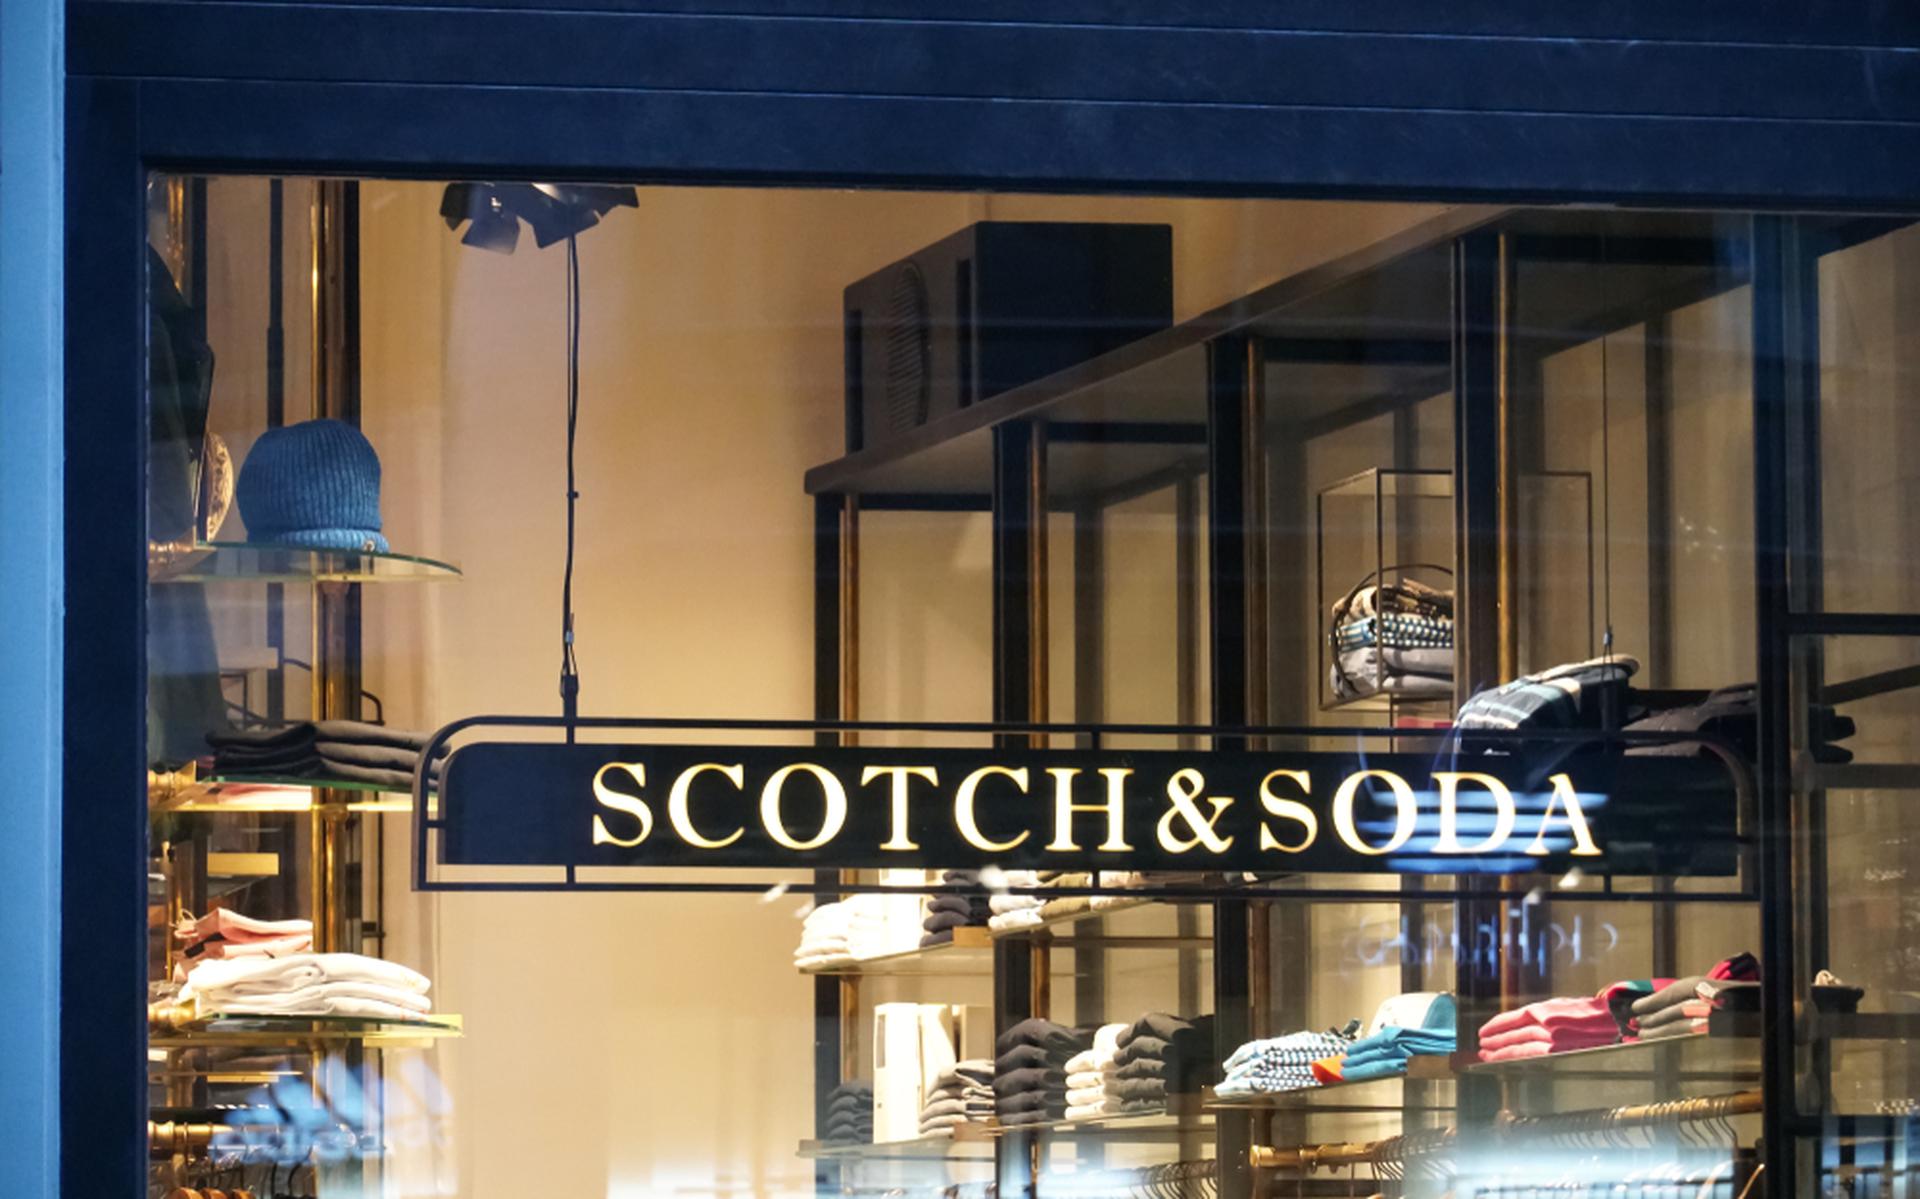 Scotch en Soda in Nederland vraagt faillissement aan voor Nederlandse tak